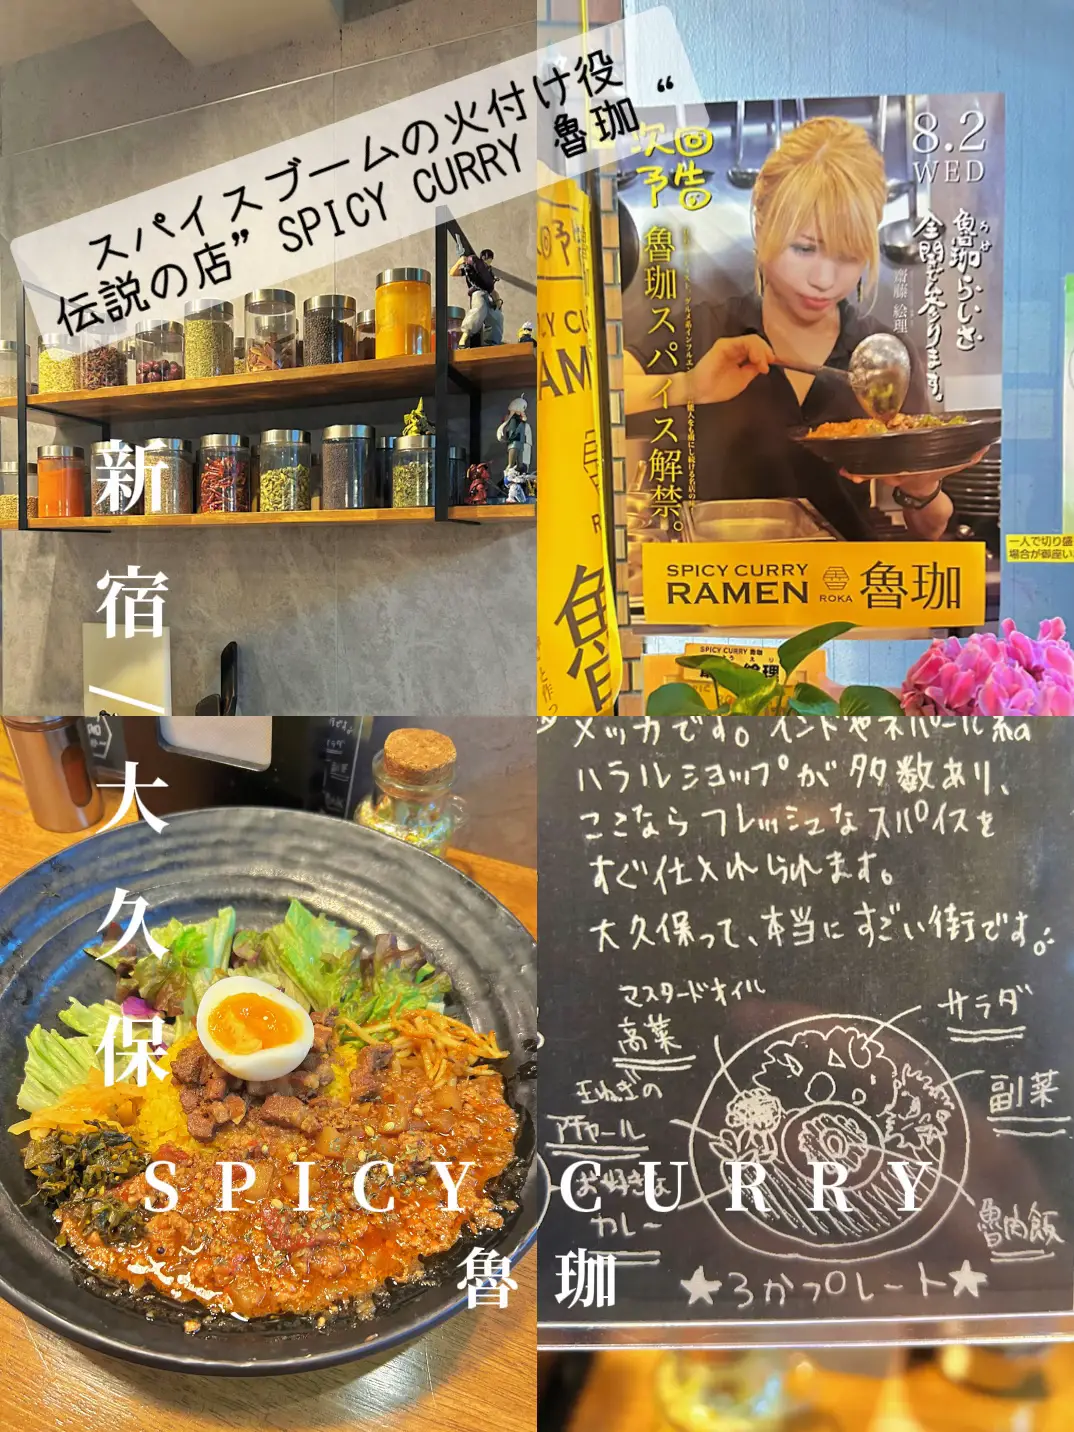 Spicy Curry魯珈 - Lemon8検索